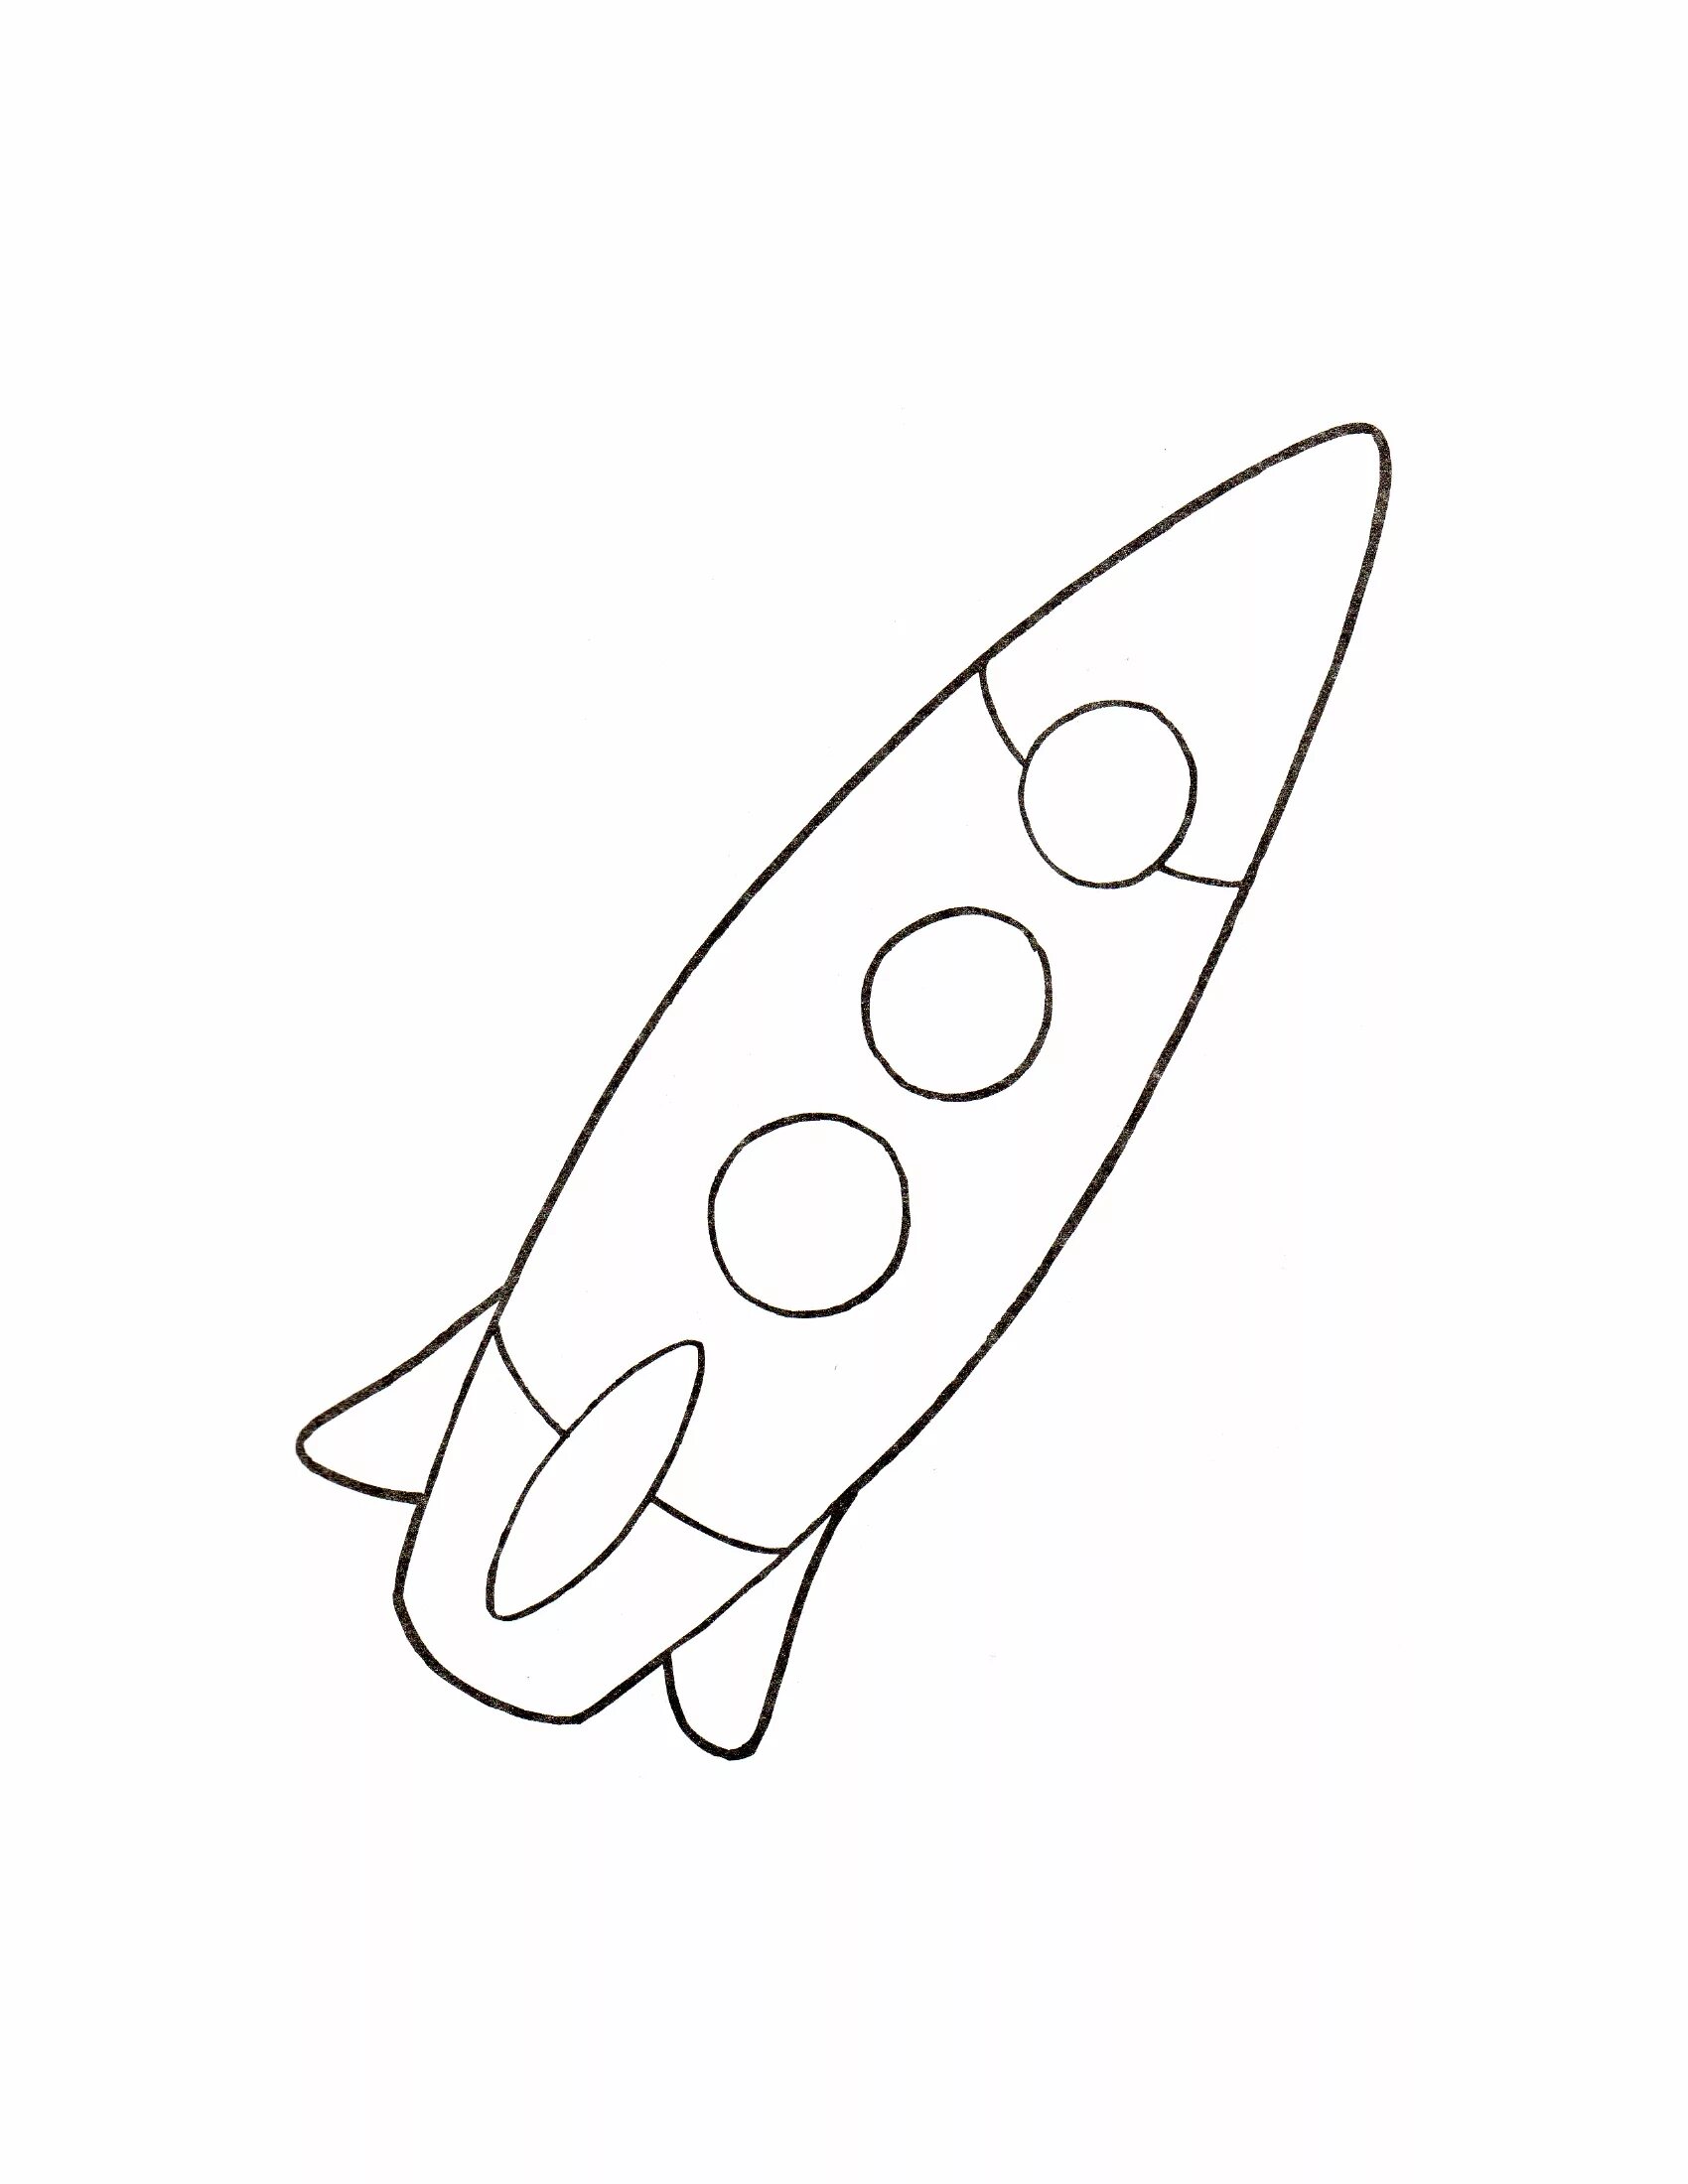 Ракета раскрасить. Ракета раскраска. Ракета раскраска для детей. Космическая ракета раскраска. Раскраска ракета для детей 3-4 лет.